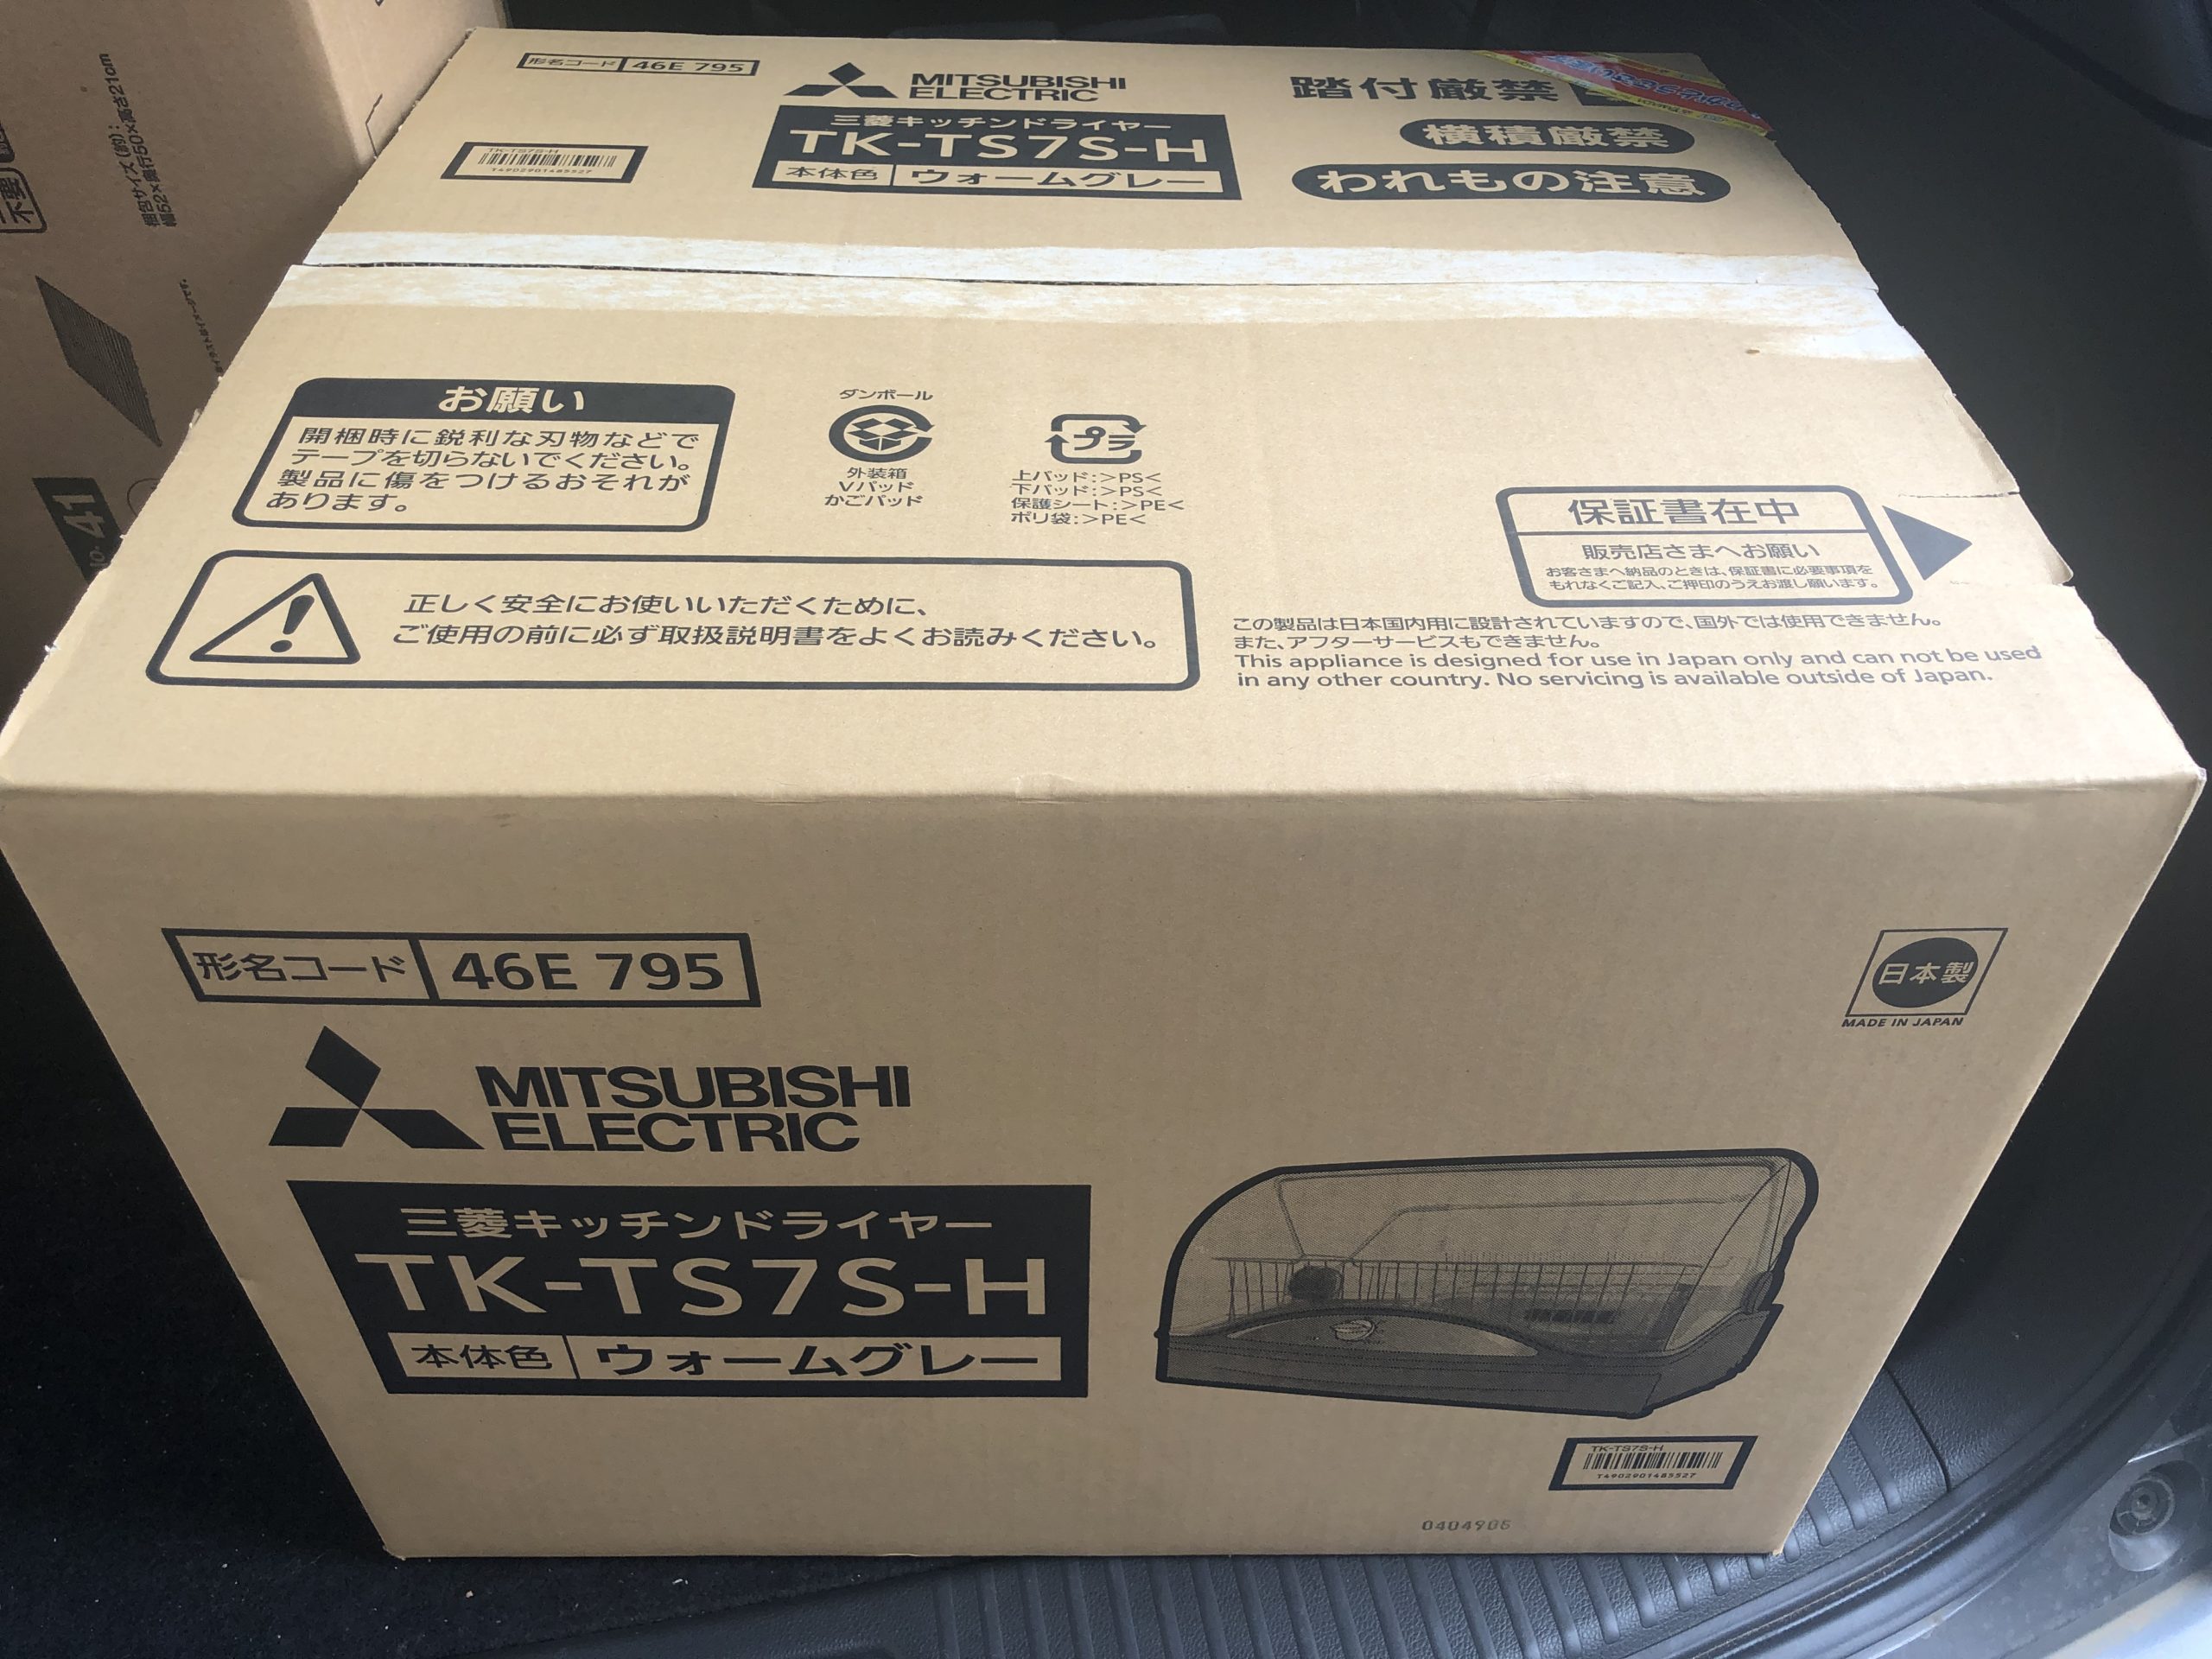 2970円 日本全国 送料無料 三菱 MITSUBISHI 食器乾燥機 キッチンドライヤー 6人用 クリーンドライ ウォームグレー TK-TS7S-H9 900円